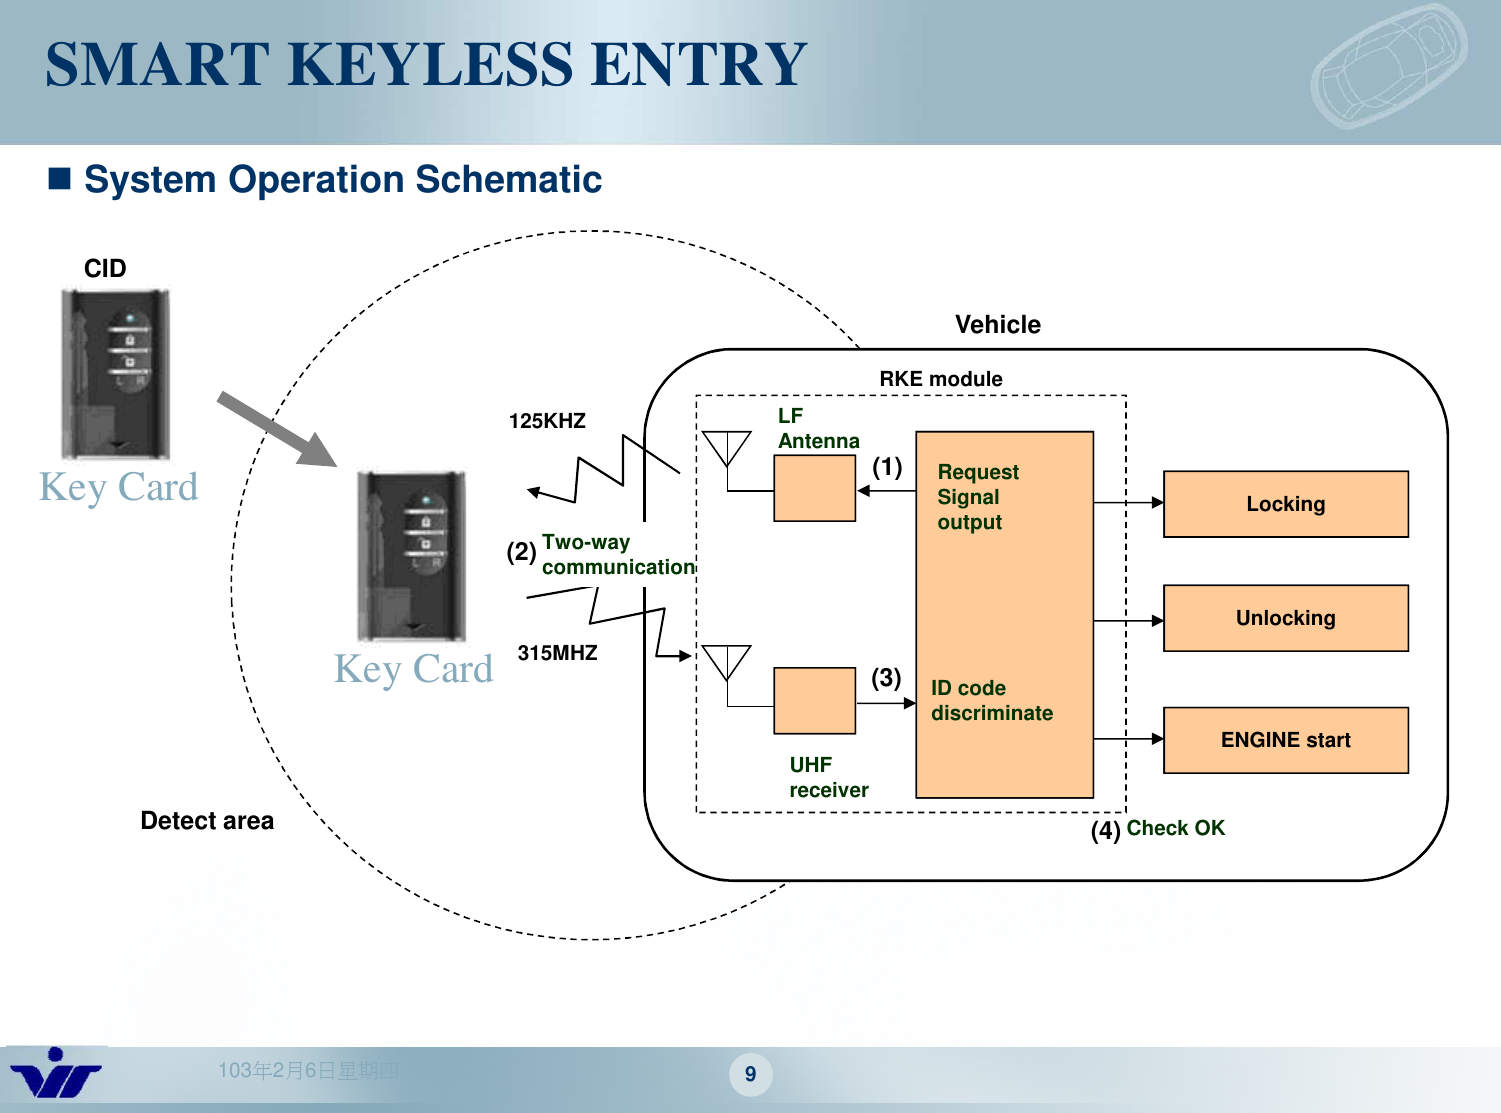 103年2月6日星期四 9SMART KEYLESS ENTRYRequest Signal outputRKE moduleLockingUnlockingENGINE startUHF receiverLF Antenna125KHZ315MHZ ID code discriminateTwo-way communicationCheck OKVehicle(1)(2)(3)(4)CIDDetect areaSystem Operation SchematicKey CardKey Card